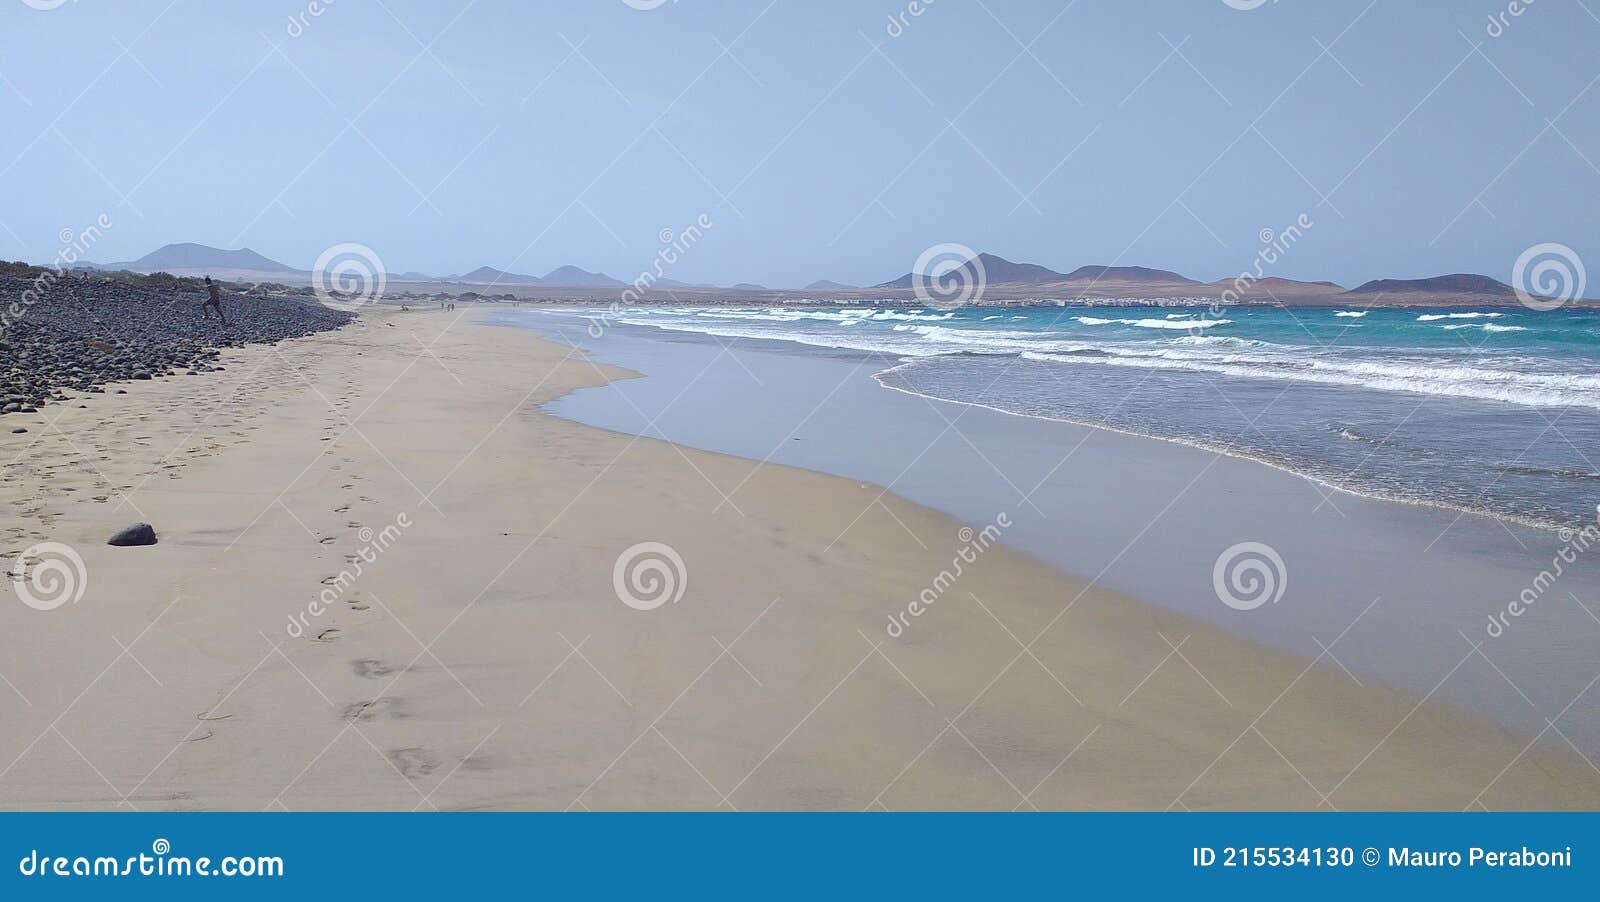 spiaggia enorme con bassa marea